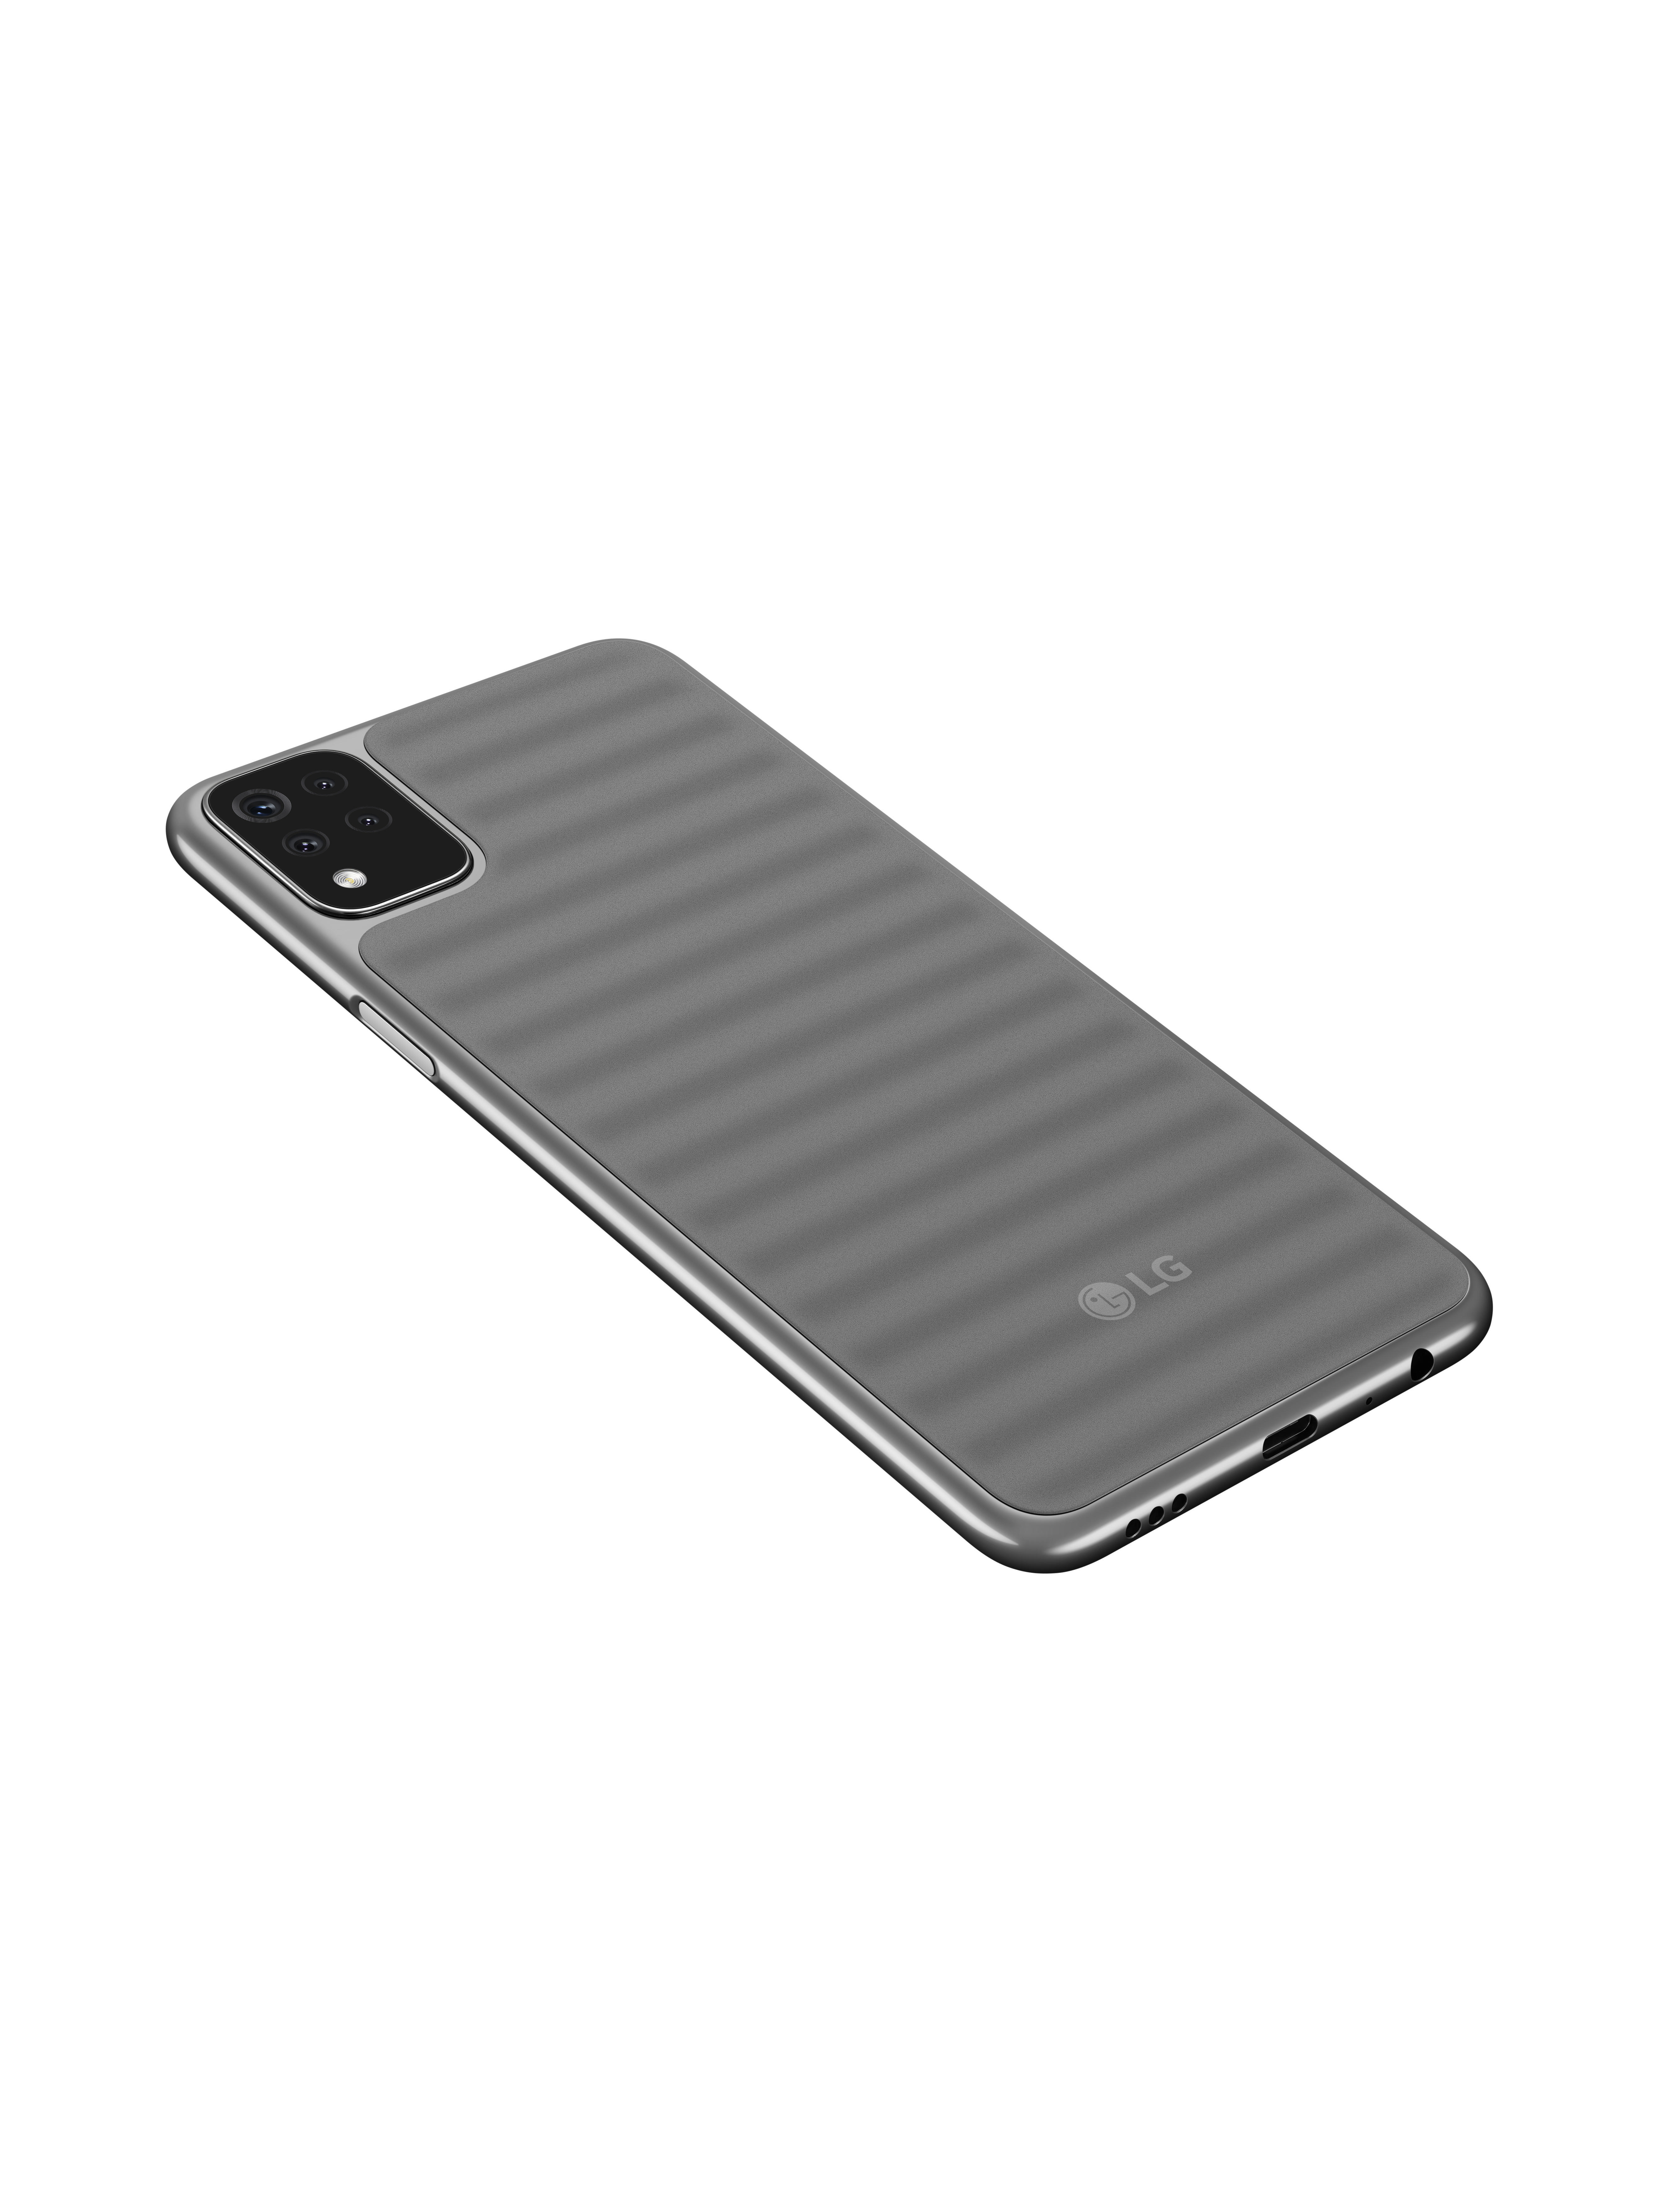 LG K42 64 GB Dual SIM Grau